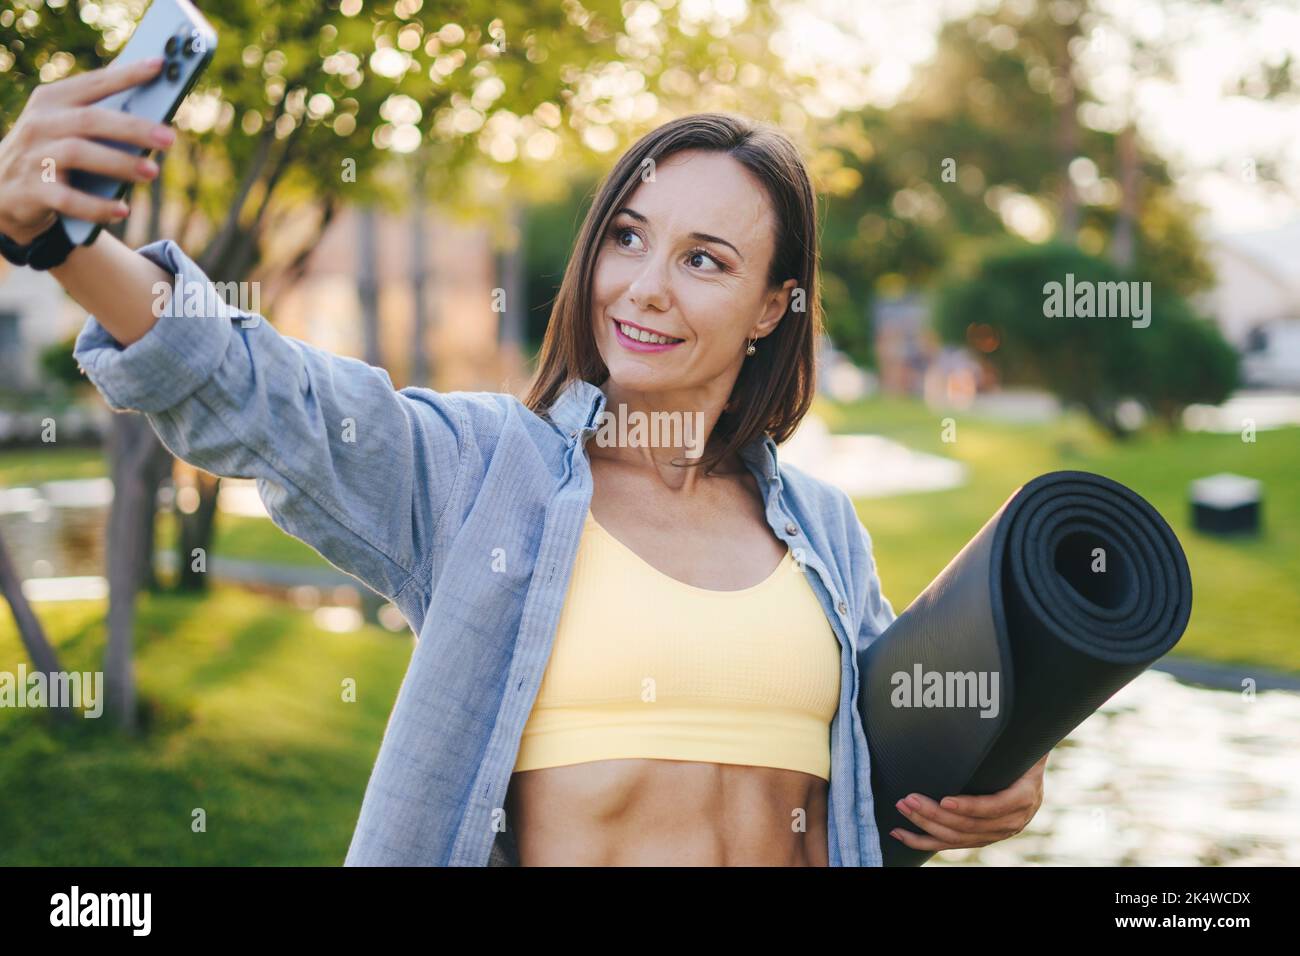 Prise de vue d'une belle femme sportive prenant un selfie par son téléphone mobile après avoir fait du jogging à l'extérieur. Les gens sont en forme de corps sain. Entraînement physique. Un mode de vie sain Banque D'Images